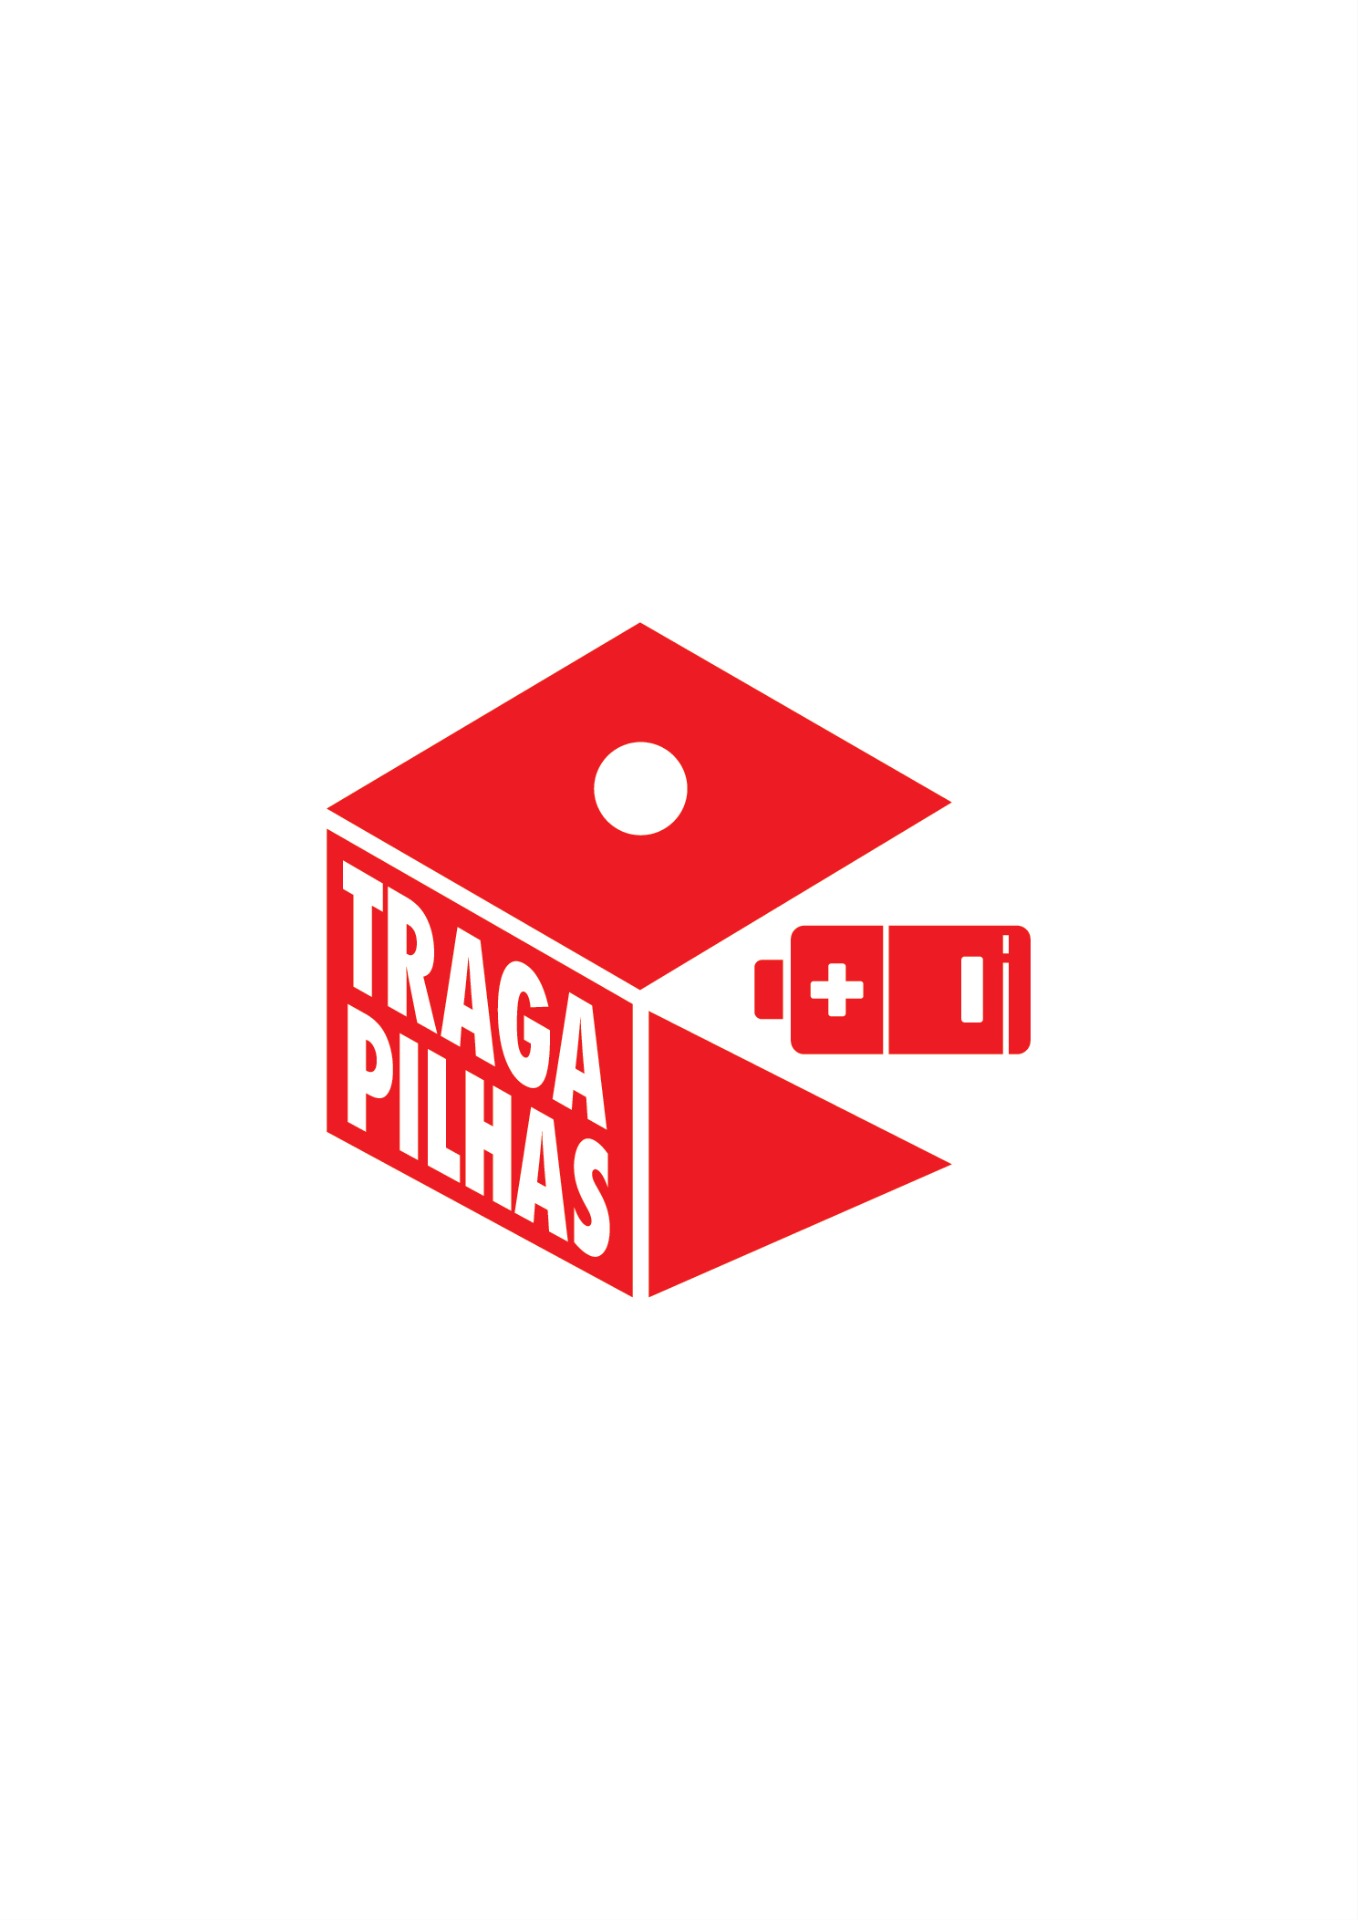 TRAGA-PILHAS-RED